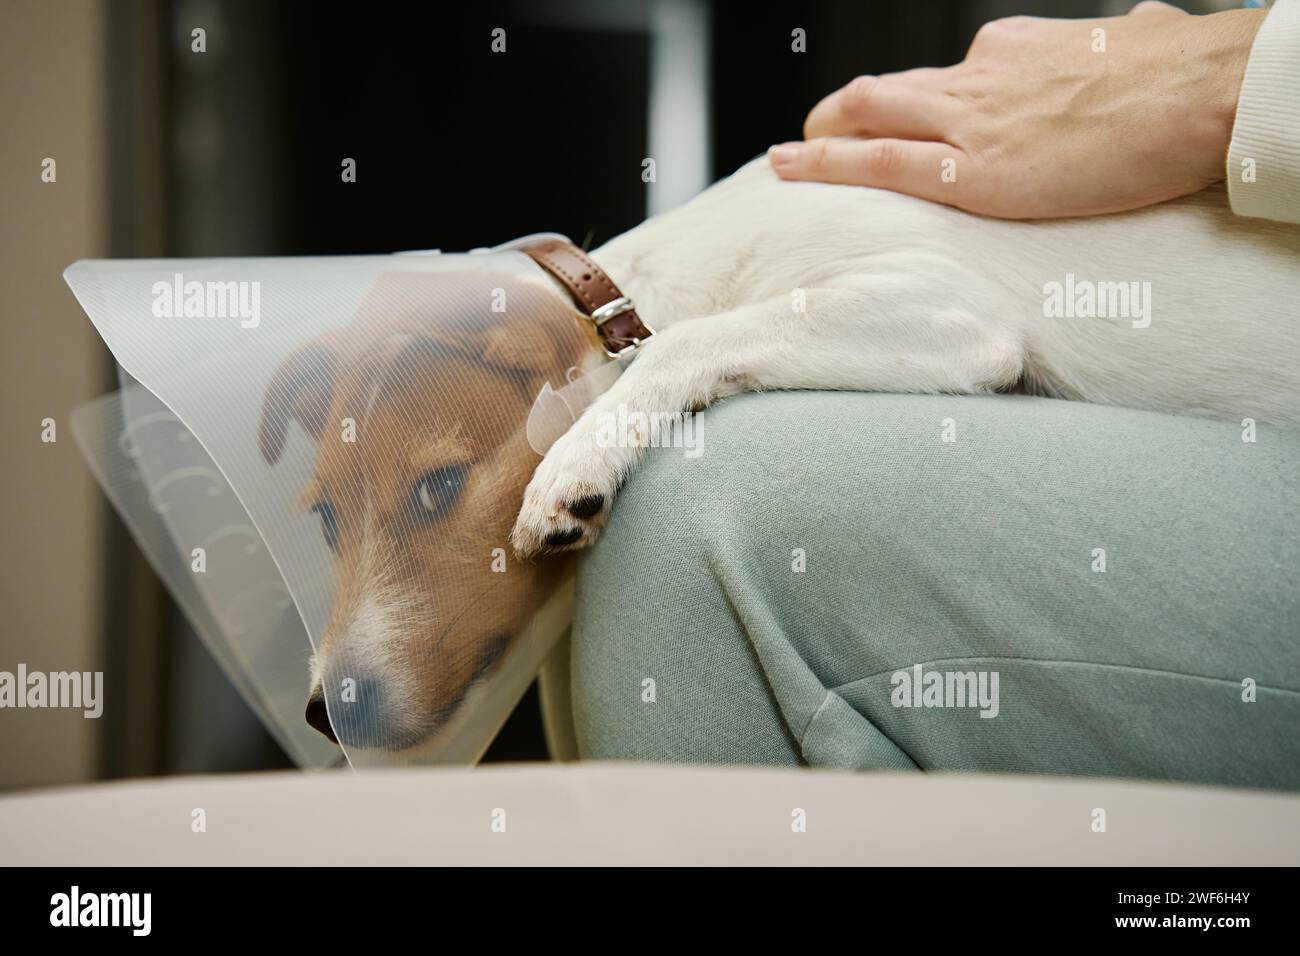 Frau streichelt Hund mit medizinischem Plastikhalsband zu Hause. Weibliche Besitzerin kümmern sich um einen süßen Hund mit elisabethanischem Kragen. Trauriger Jack Russell Terrier im Tierkegel Stockfoto